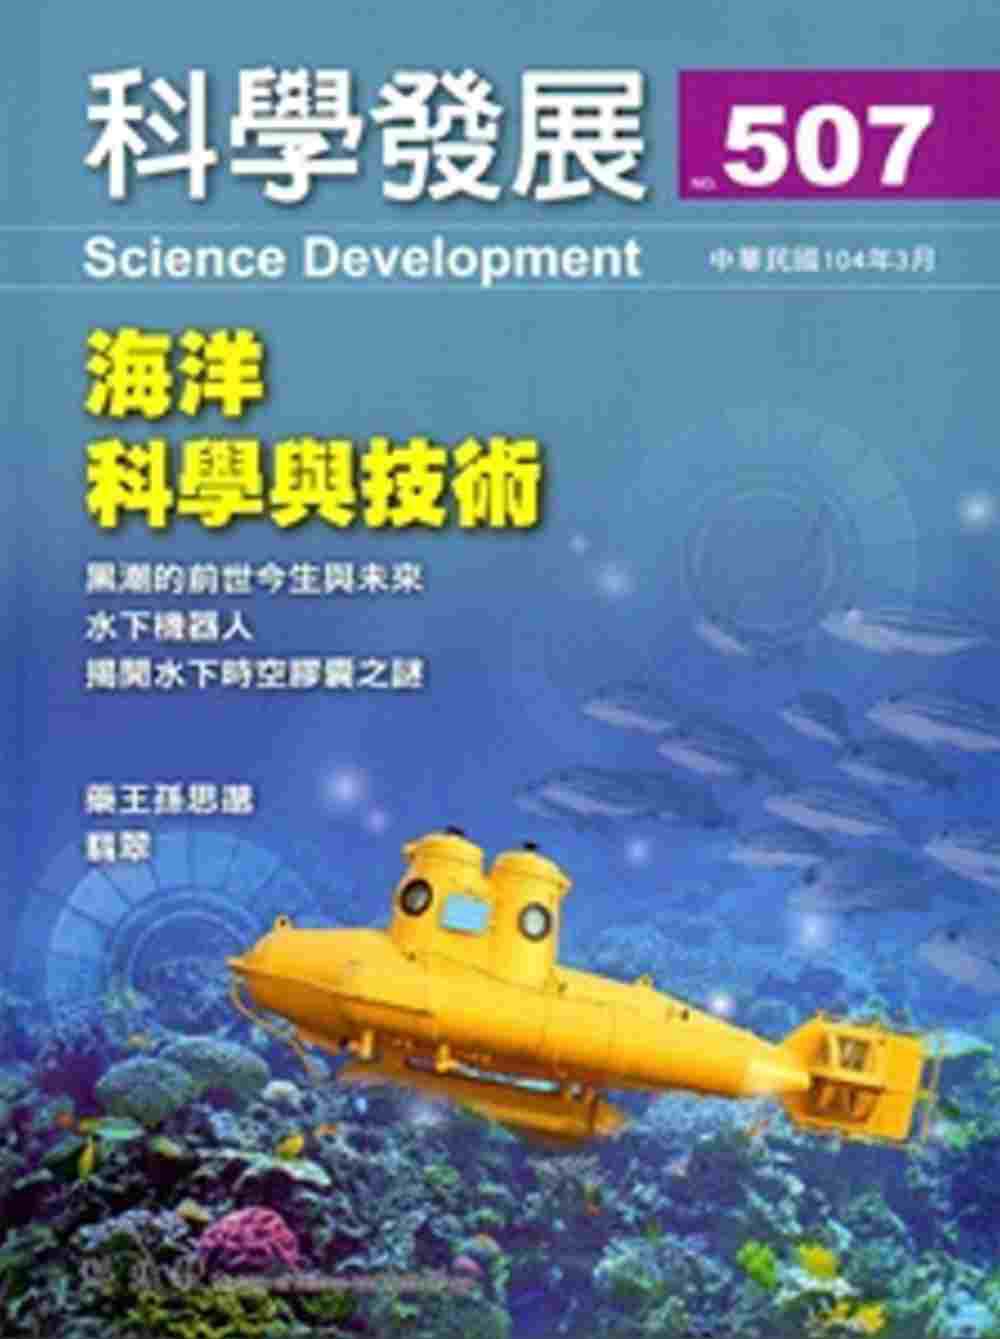 科學發展月刊第507期(104/03)